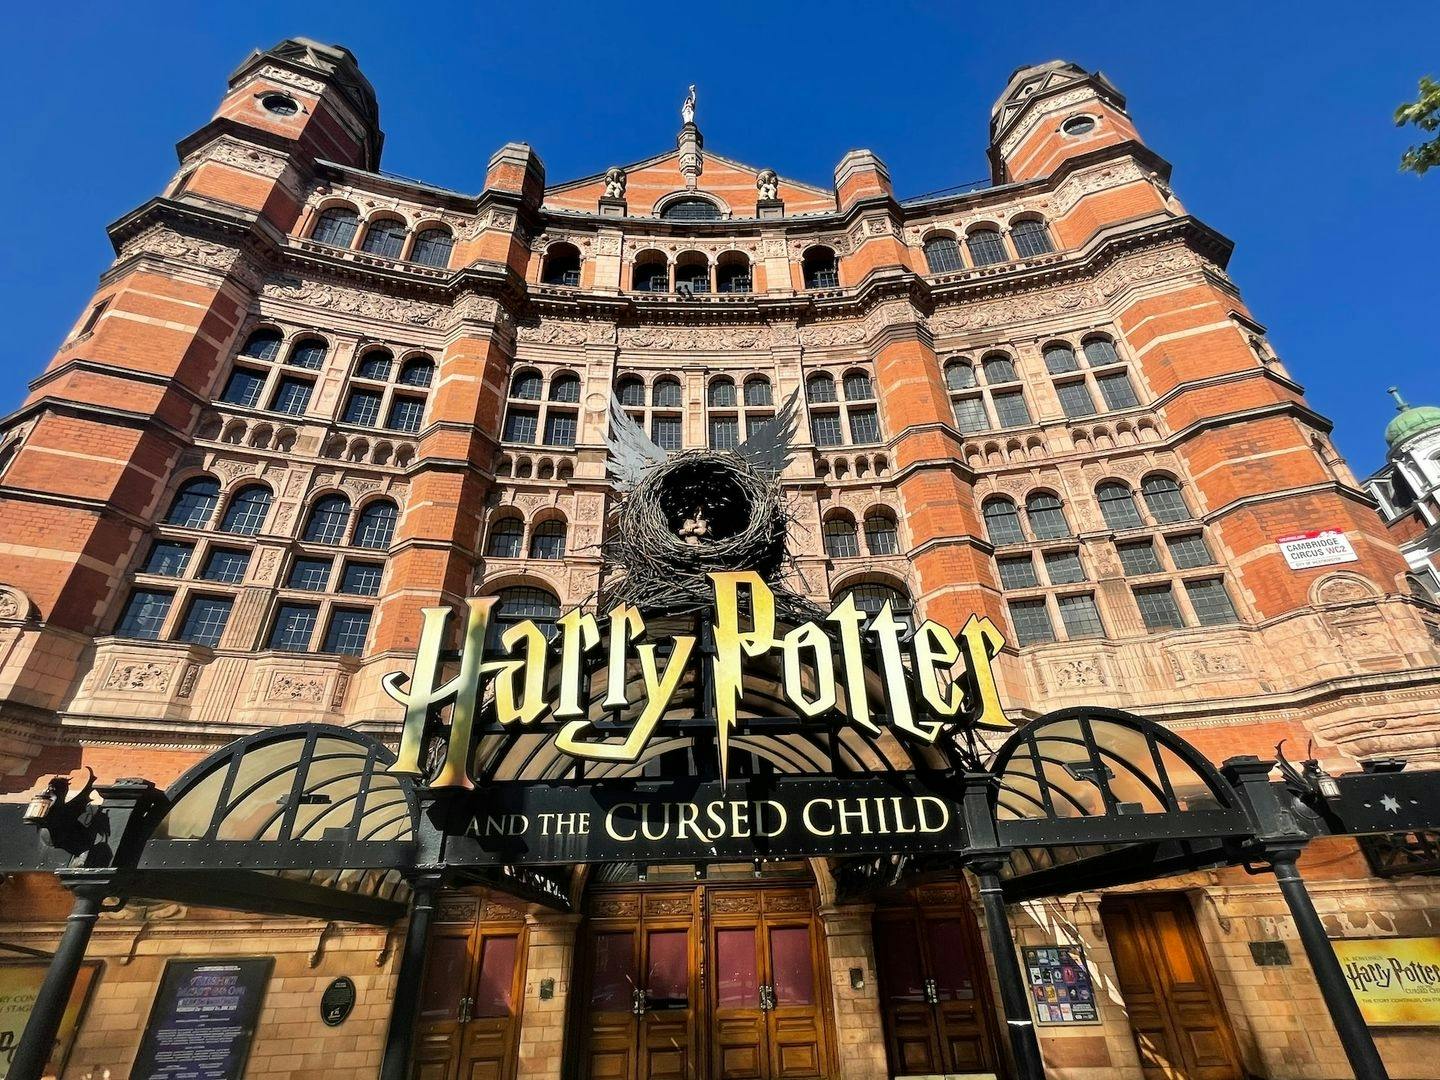 Recorrido a pie autoguiado temático de Harry Potter en Londres en una aplicación móvil